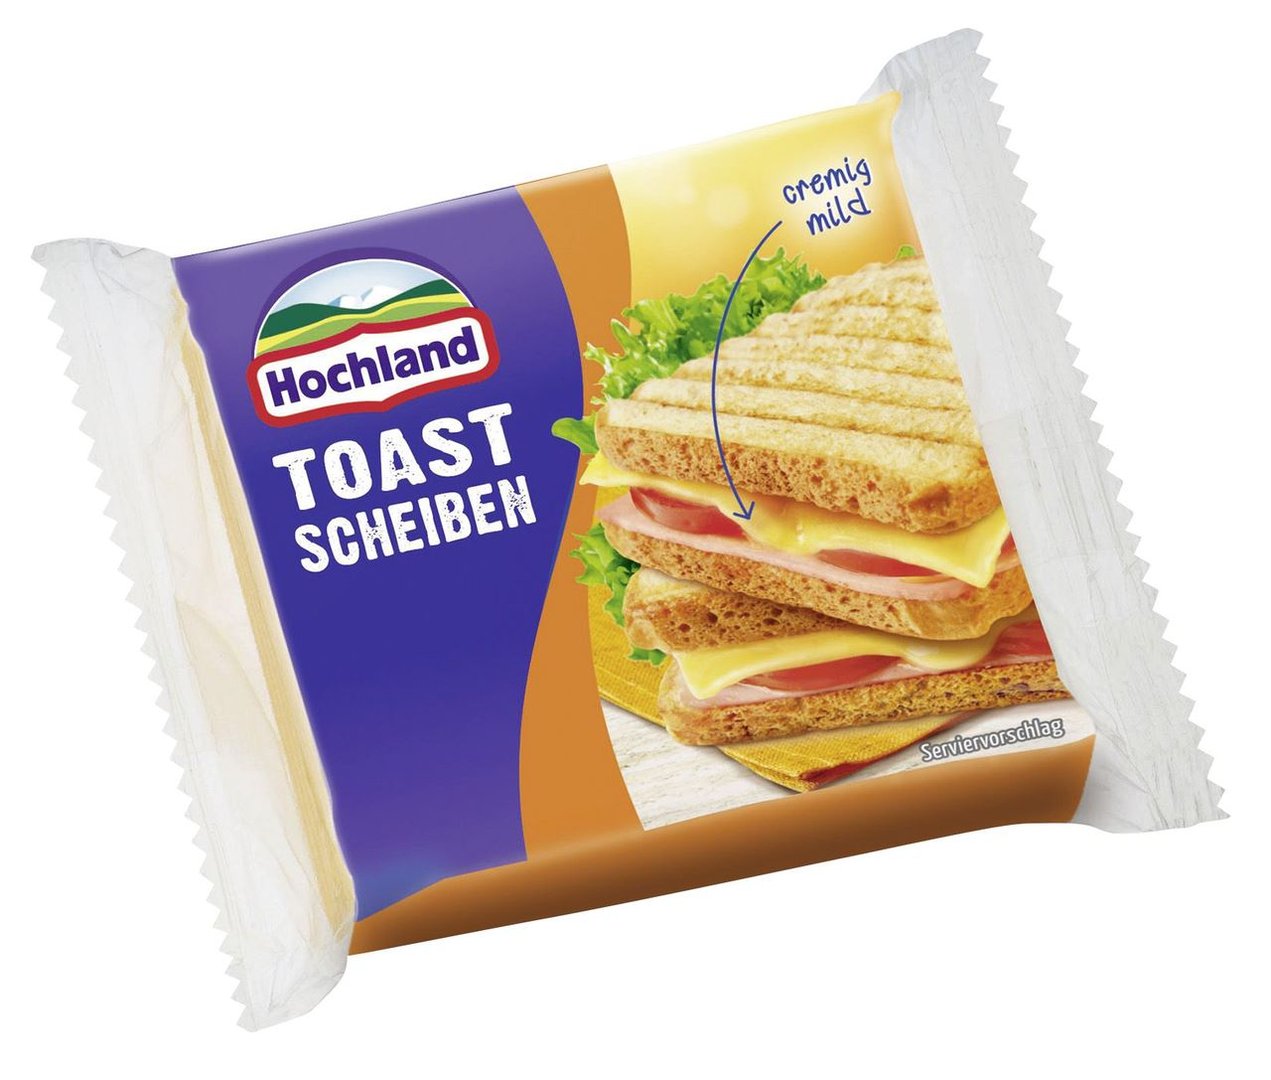 Hochland - Toast Scheiben 45 % Fett - 1 x 200 g Beutel